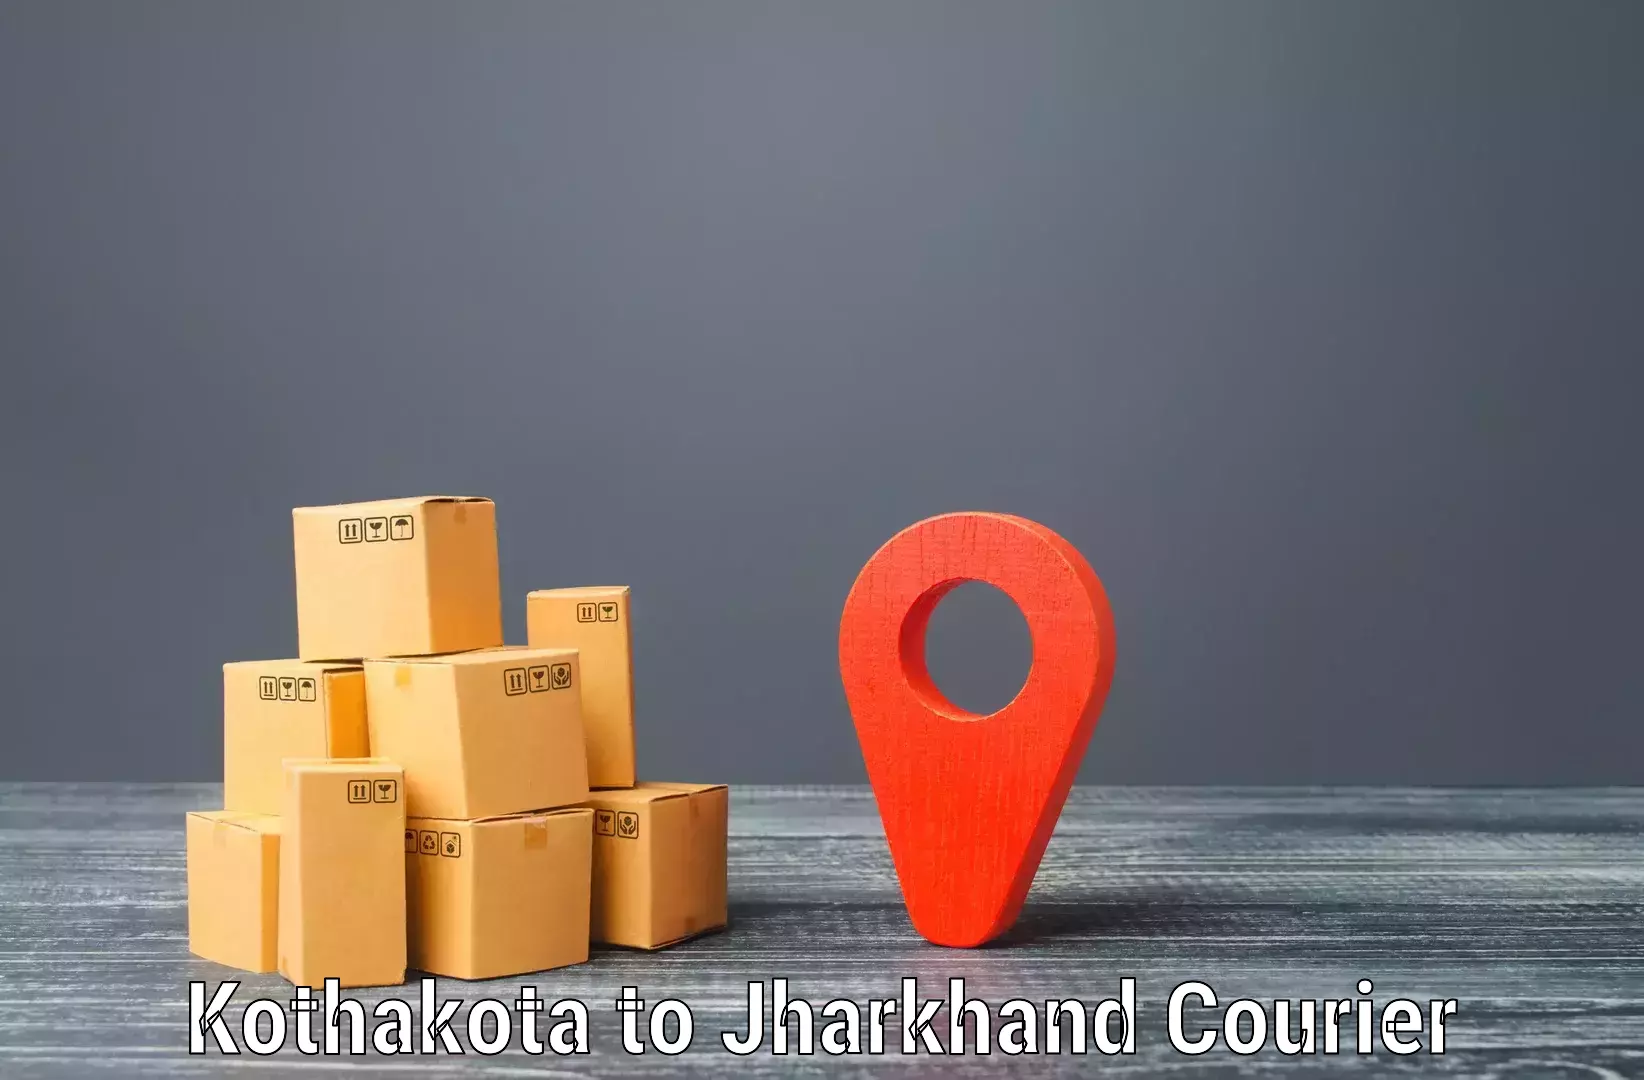 Efficient freight transportation in Kothakota to Chandankiyari